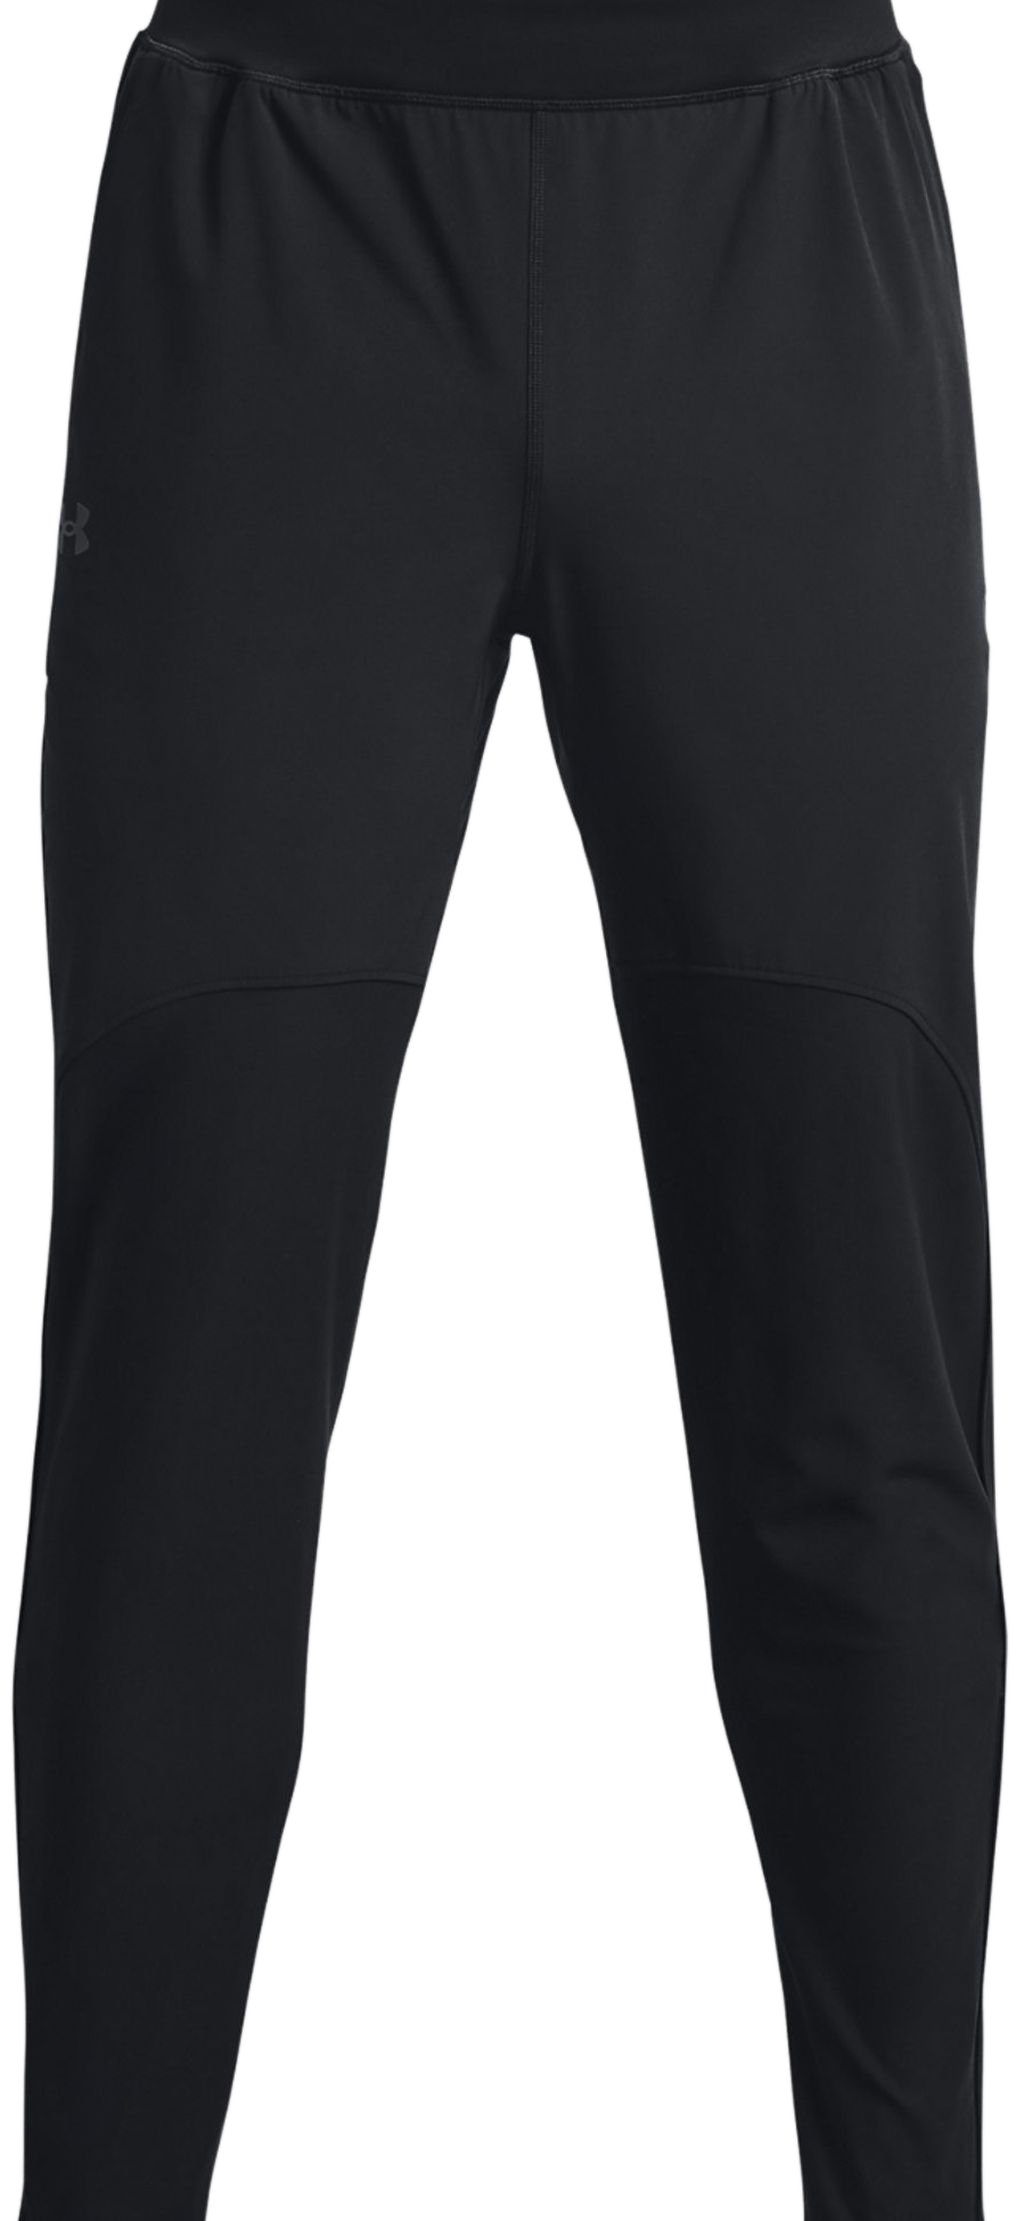 Men's trousers Under Armour Men's Qualifier Run 2.0 Pants - black